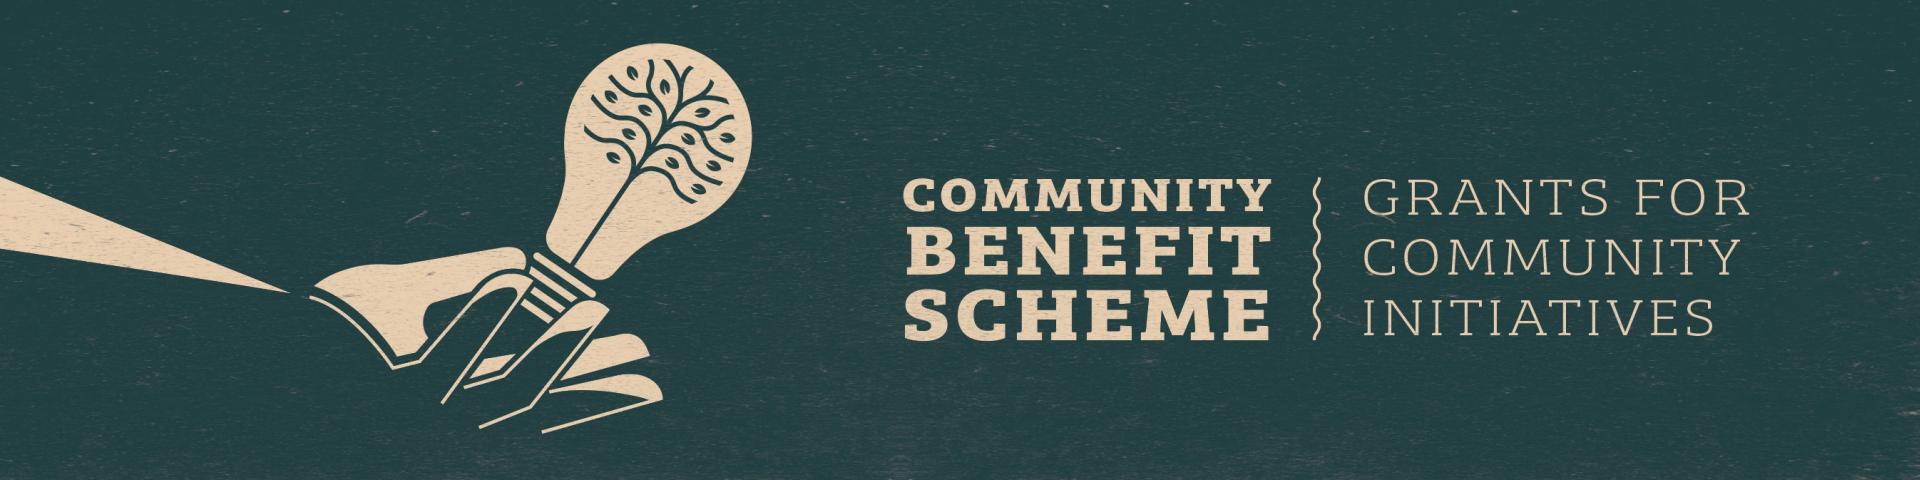 Community Benefit Scheme